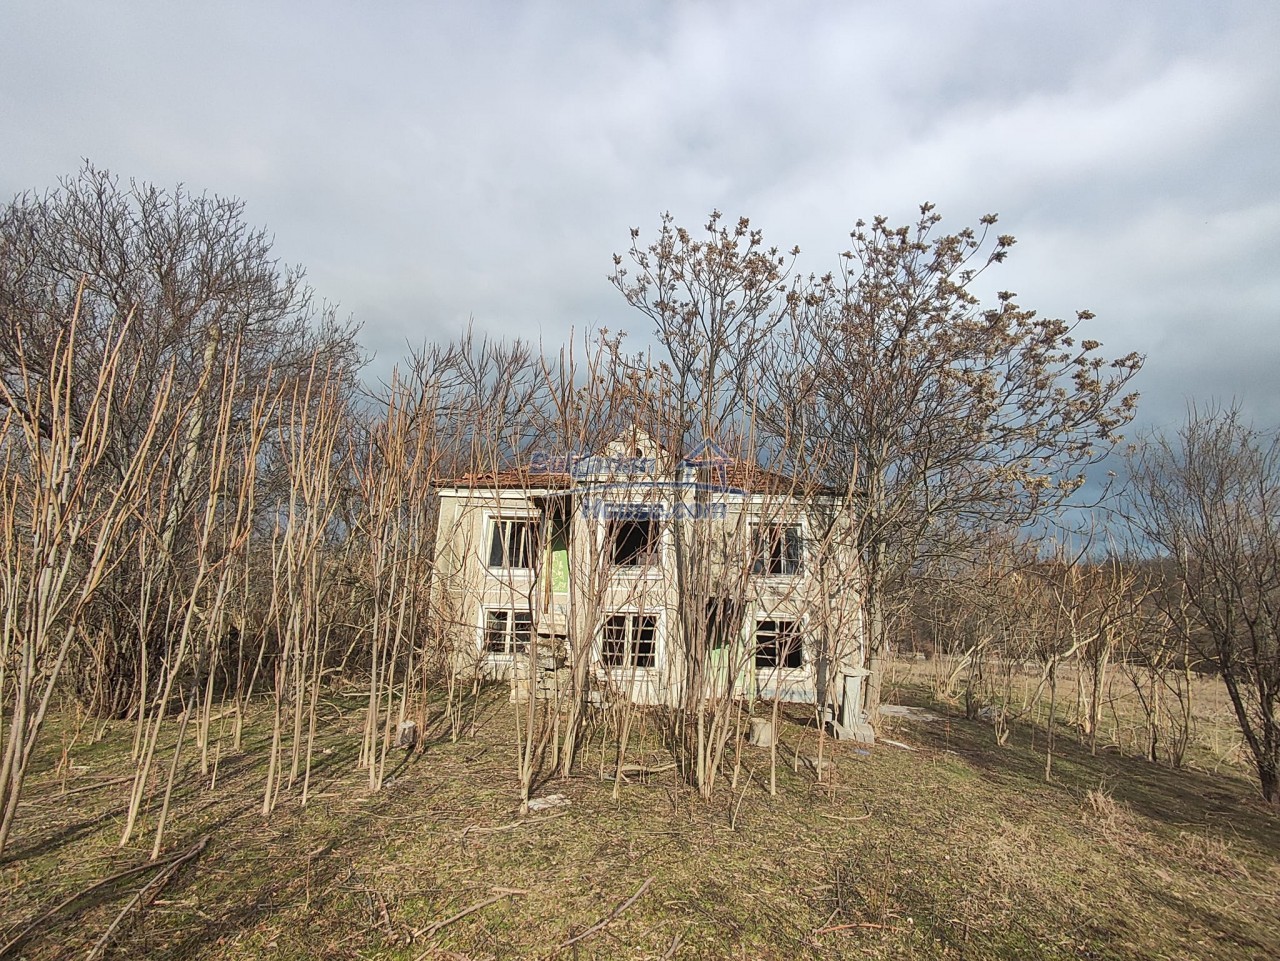 Дома для продажи около Варна, Область  - 14673